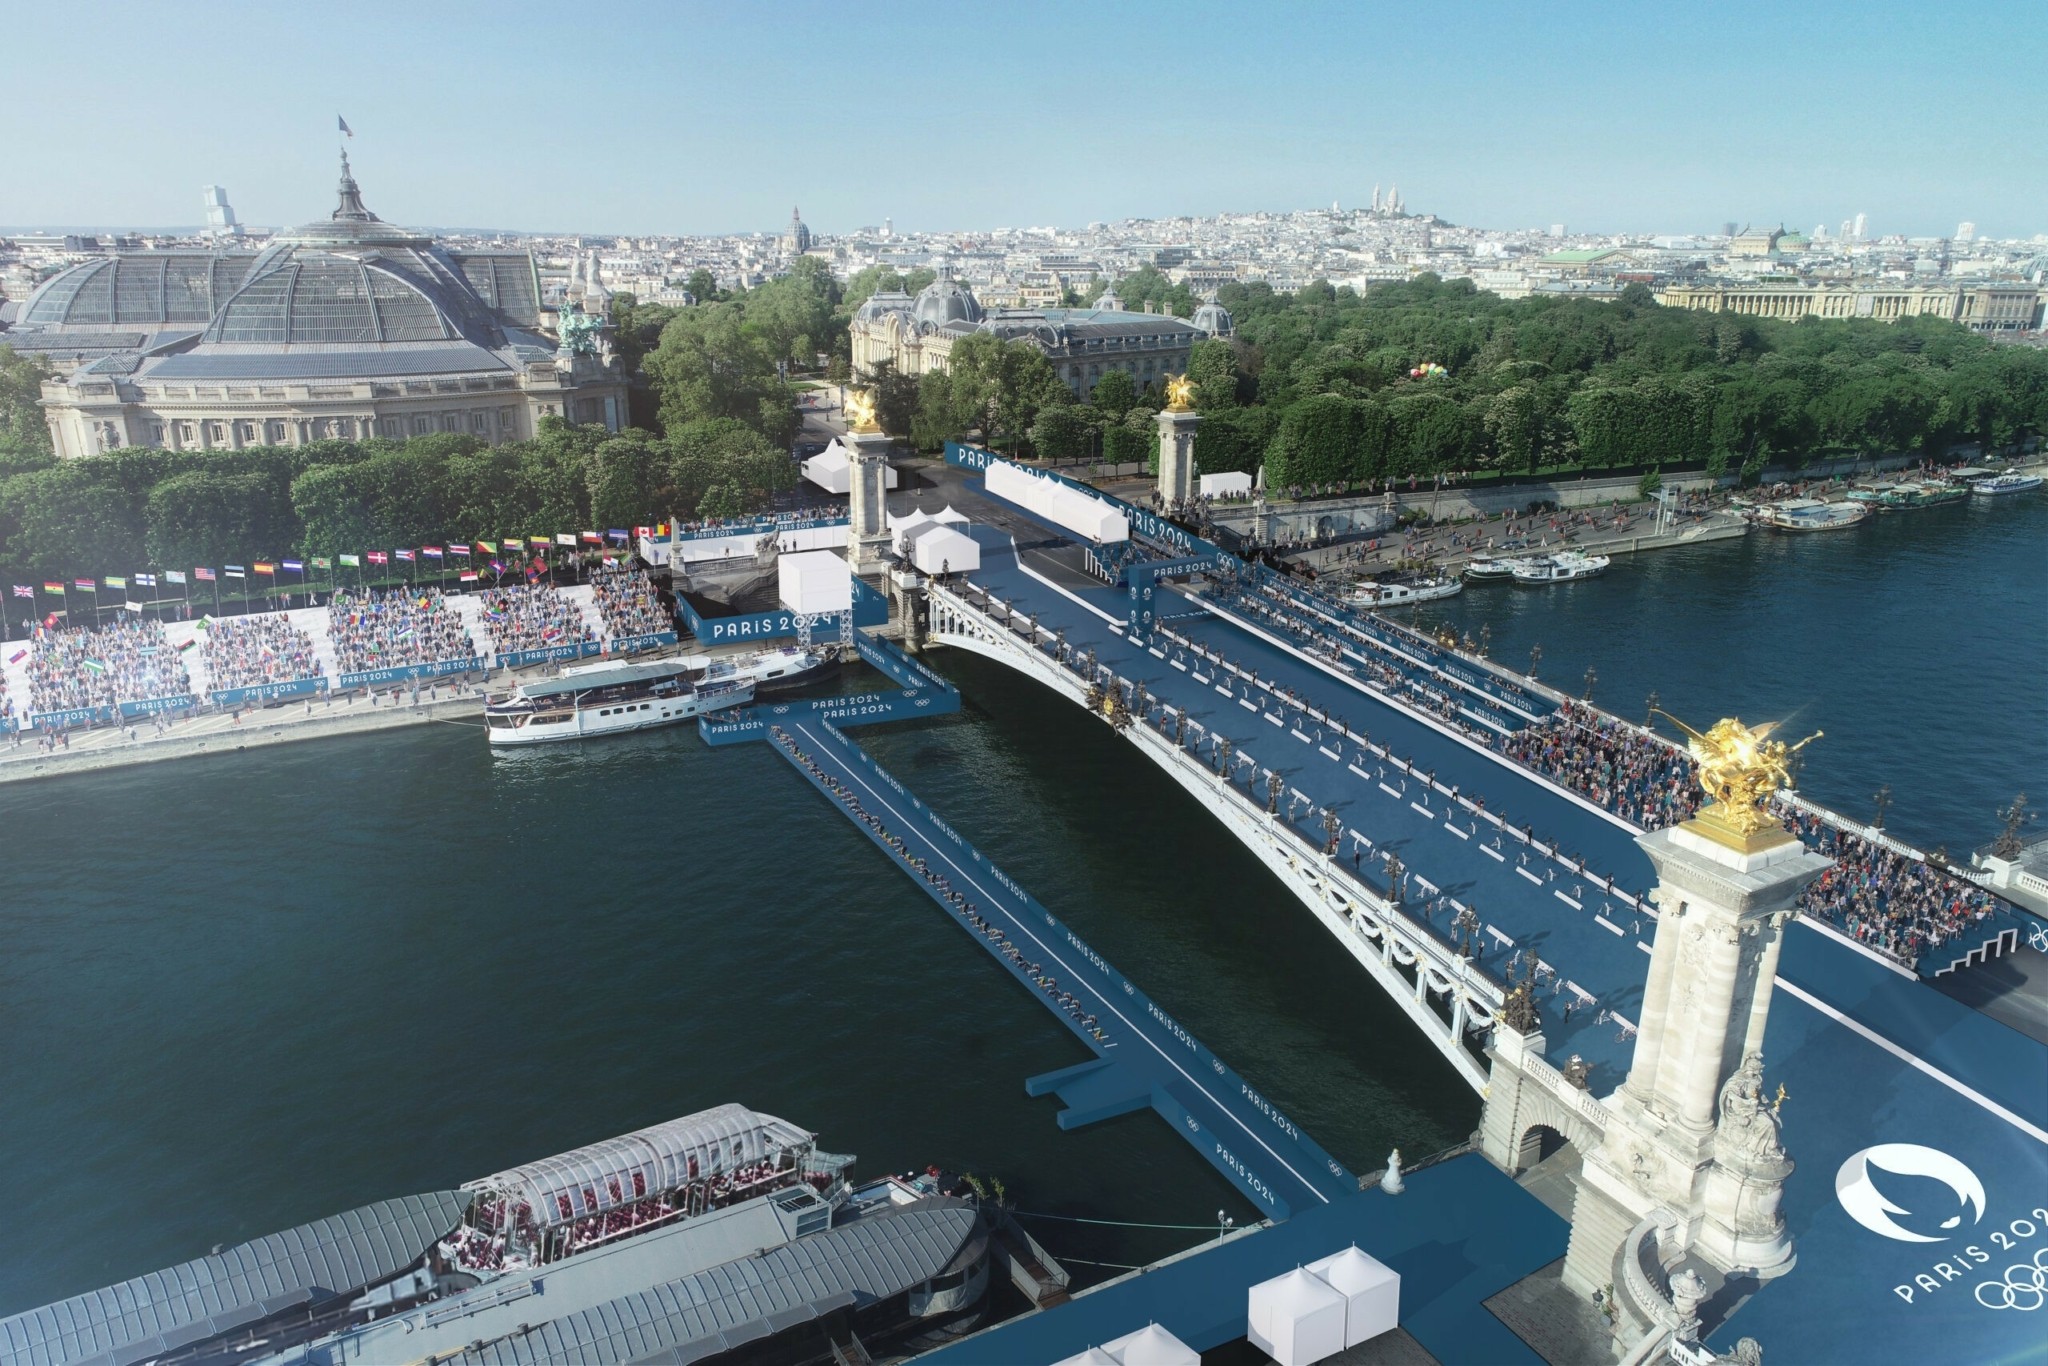 Σε αυτά τα στάδια θα γίνουν οι Ολυμπιακοί Aγώνες στο Παρίσι 